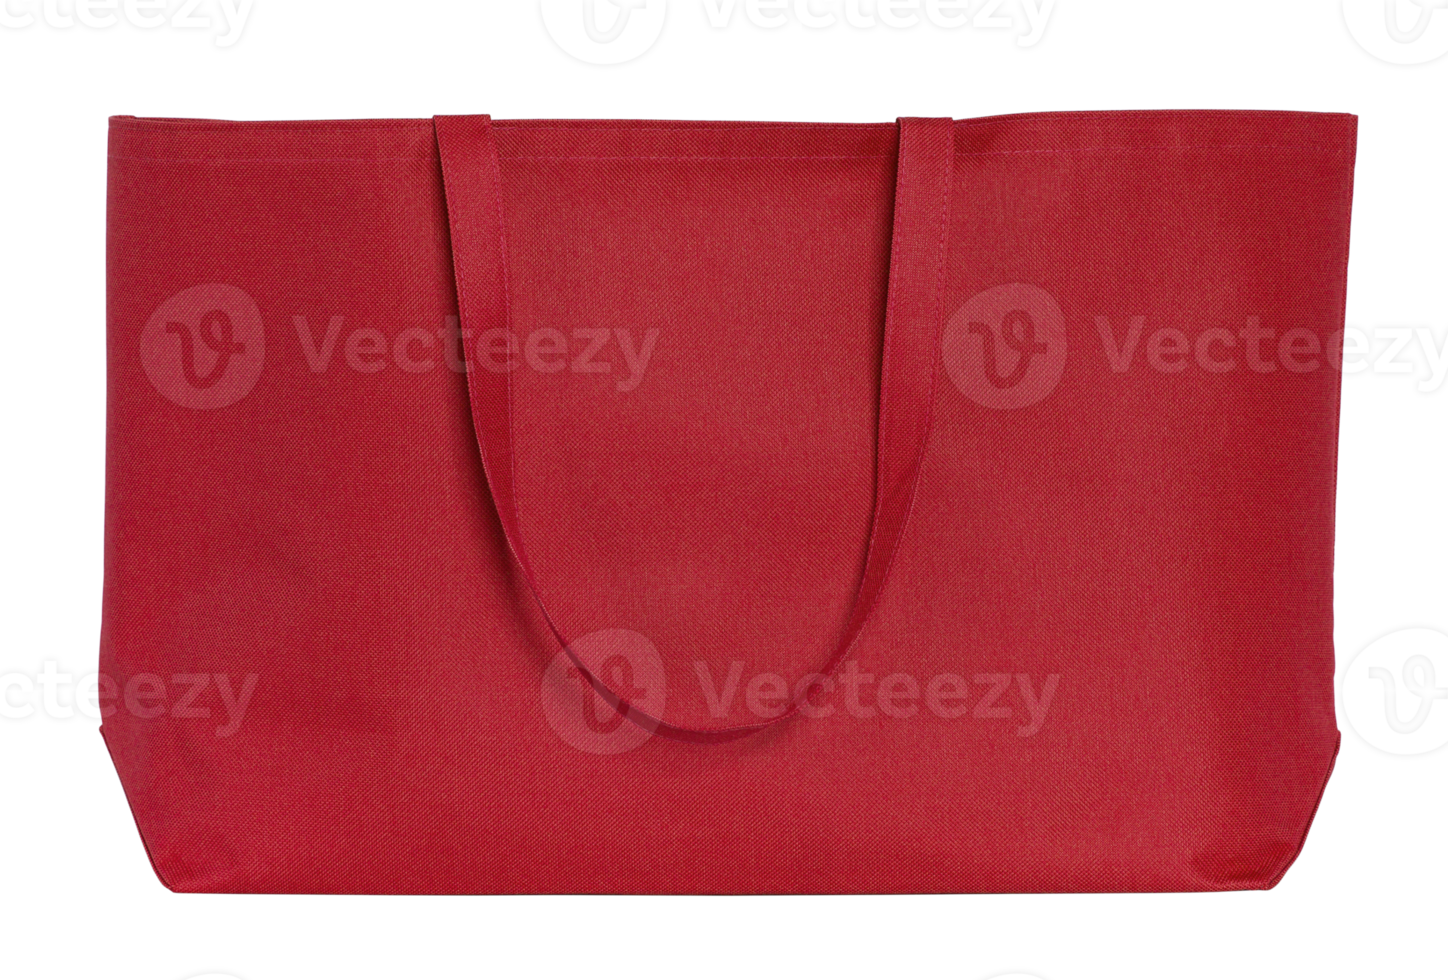 sac en tissu rouge isolé avec chemin de détourage pour maquette png